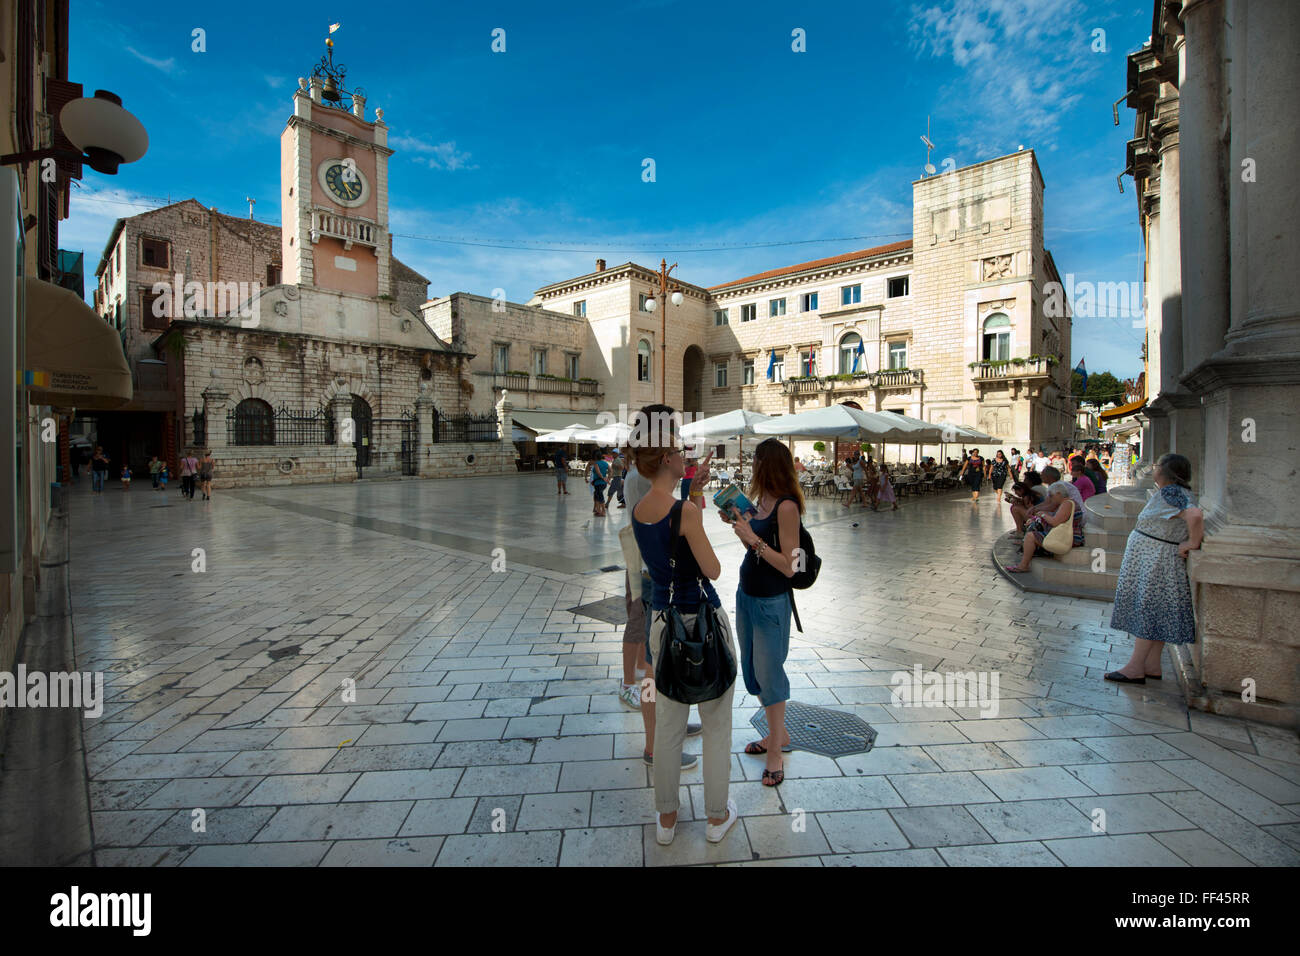 Kroatien, Dalmatien, Zadar, Narodni trg Stadtwache mit Uhrturm und Rathaus Foto Stock